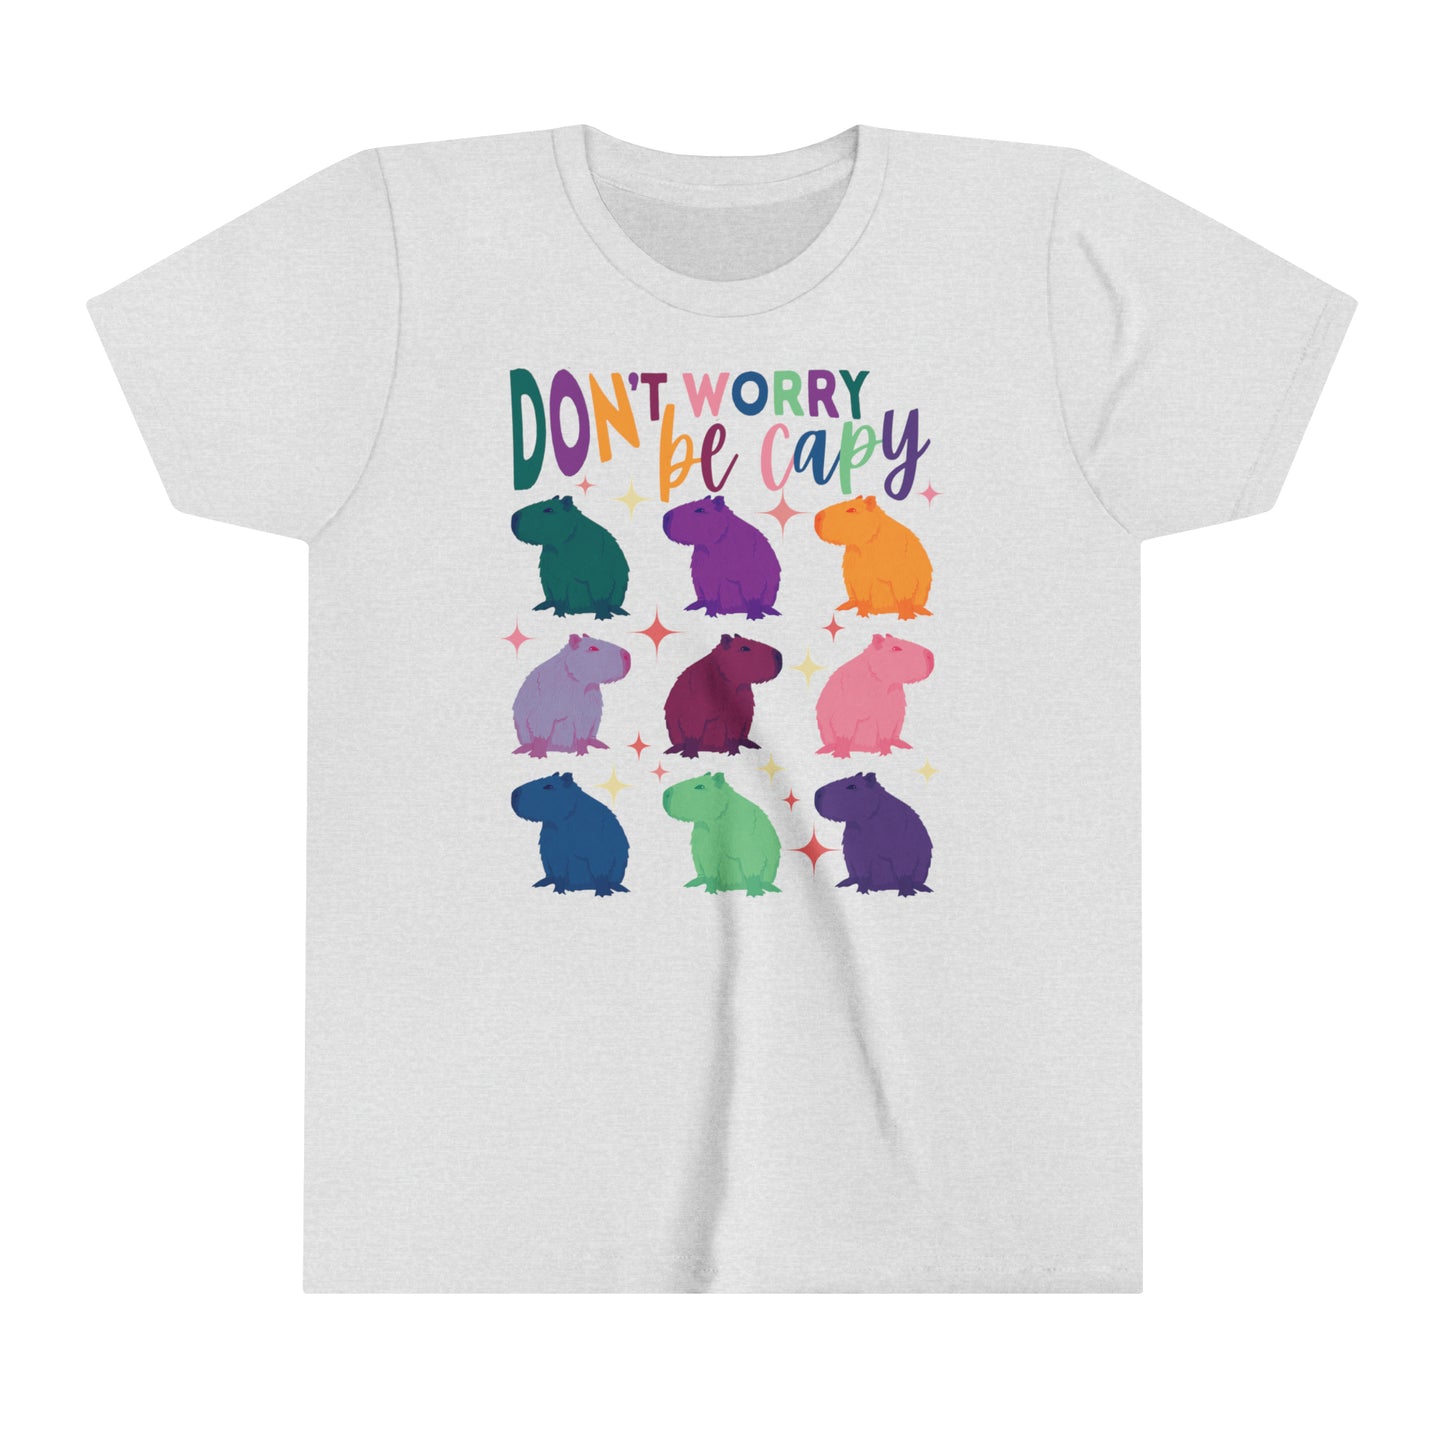 Capybara T-Shirt Youth | Retro Groovy Capybara Shirt